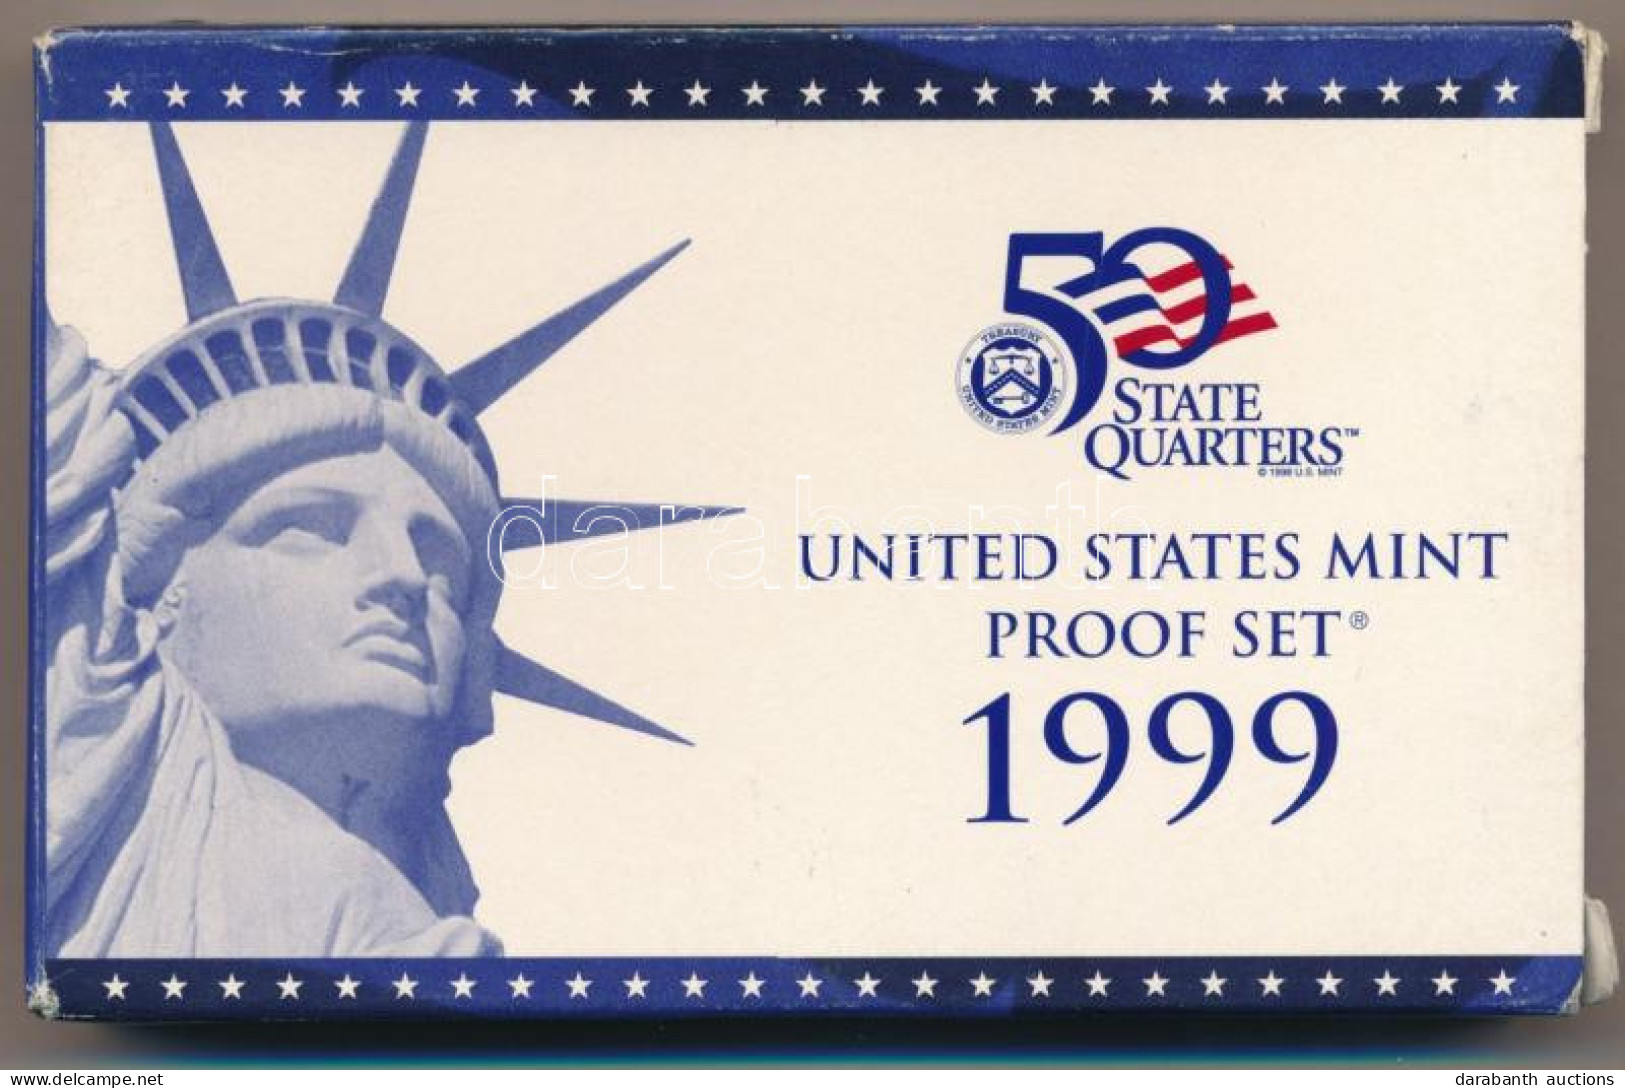 Amerikai Egyesült Államok 1999S 1c-1/2$ (4xklf) Forgalmi Sor, Műanyag Tokban + 1/4$ Cu-Ni "50 állam" (5xklf), Műanyag To - Unclassified